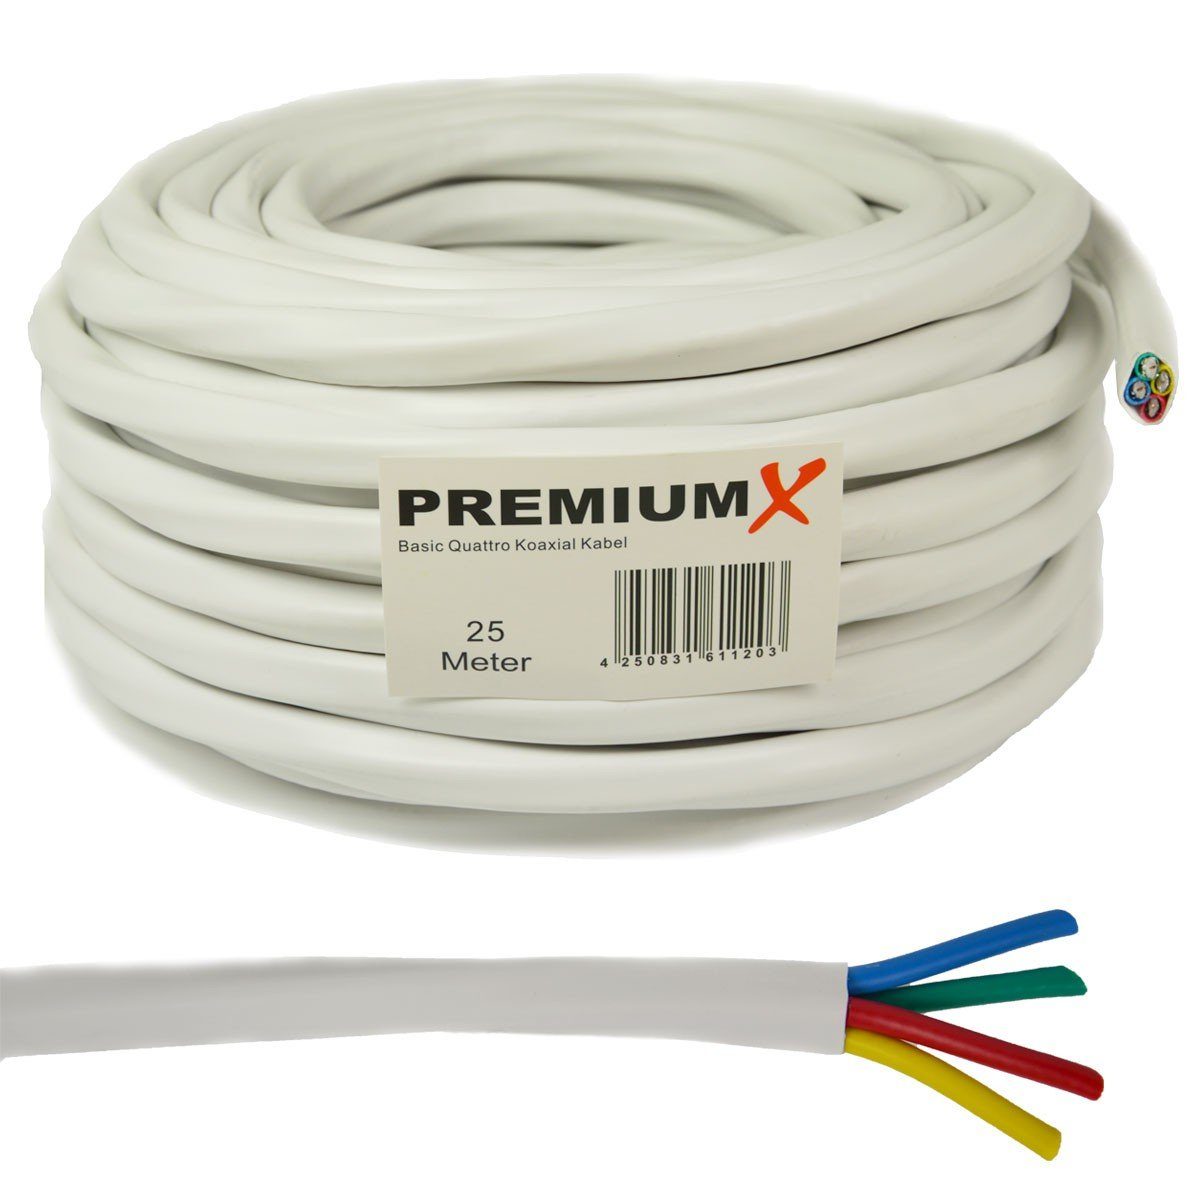 Koaxial 90dB SAT-Kabel Quad SAT Quattro F-Stecker PremiumX 16x Weiß Basic Kabel 25m